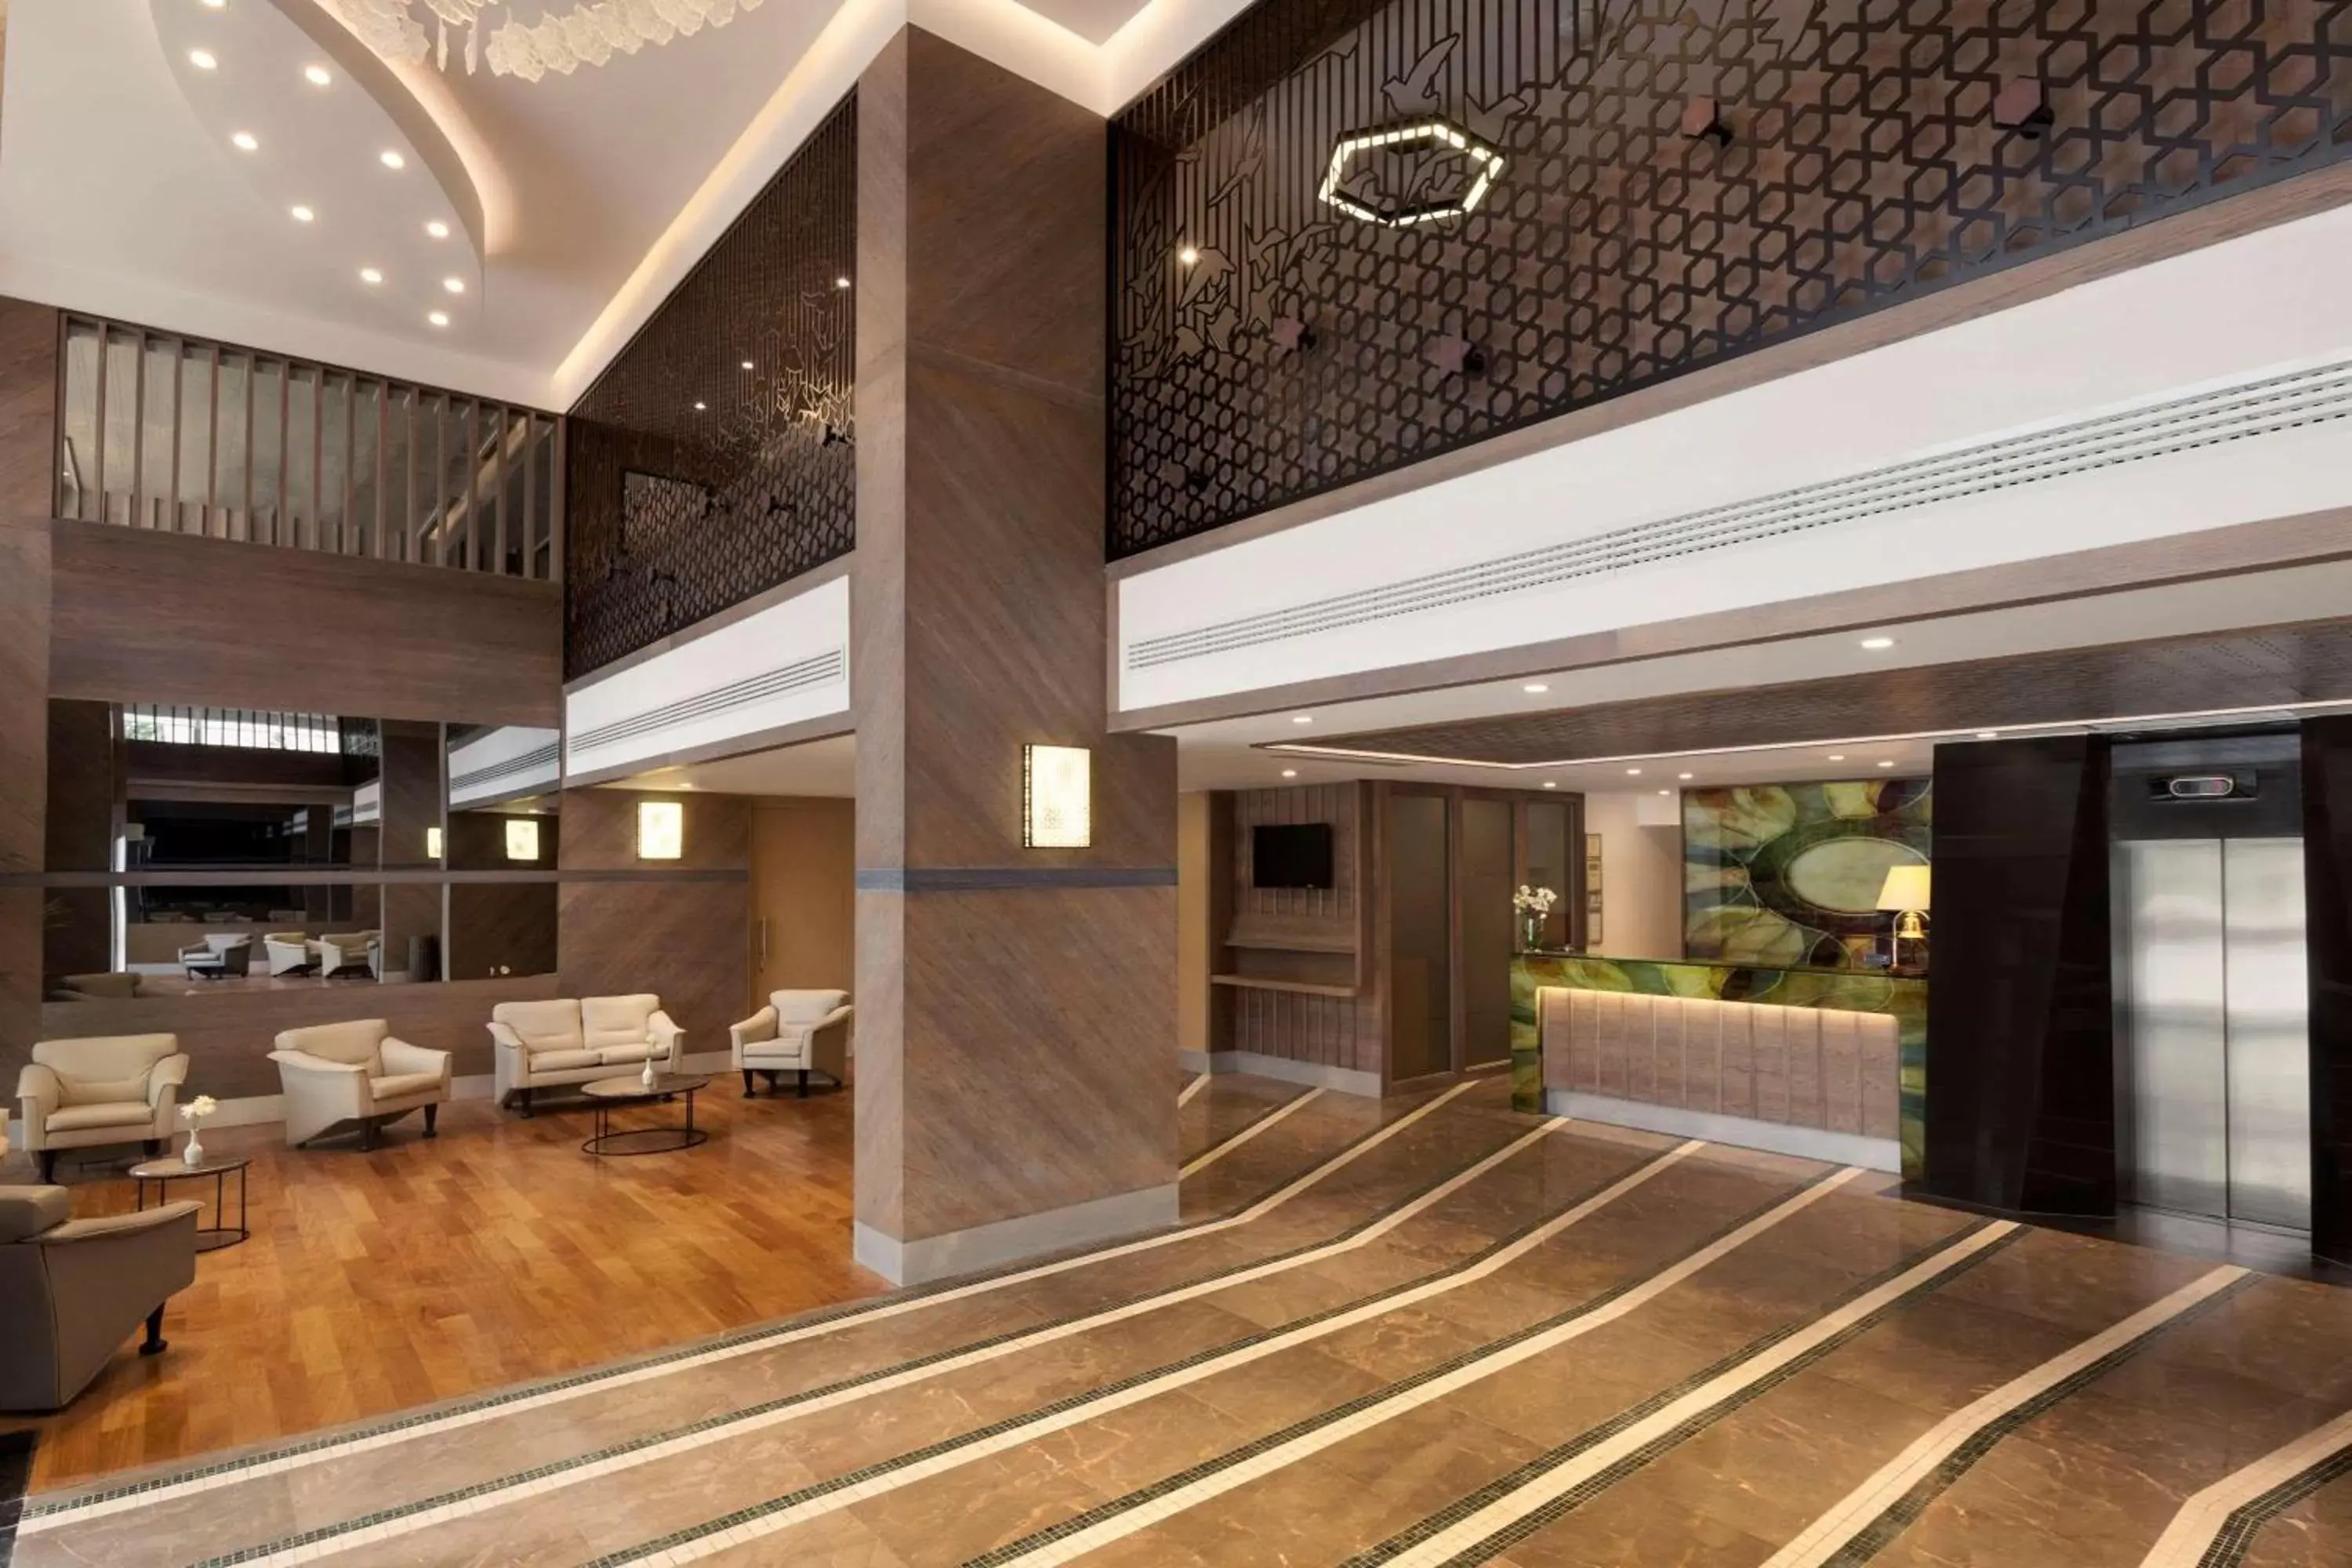 Lobby or reception, Lobby/Reception in Ramada by Wyndham Istanbul Old City